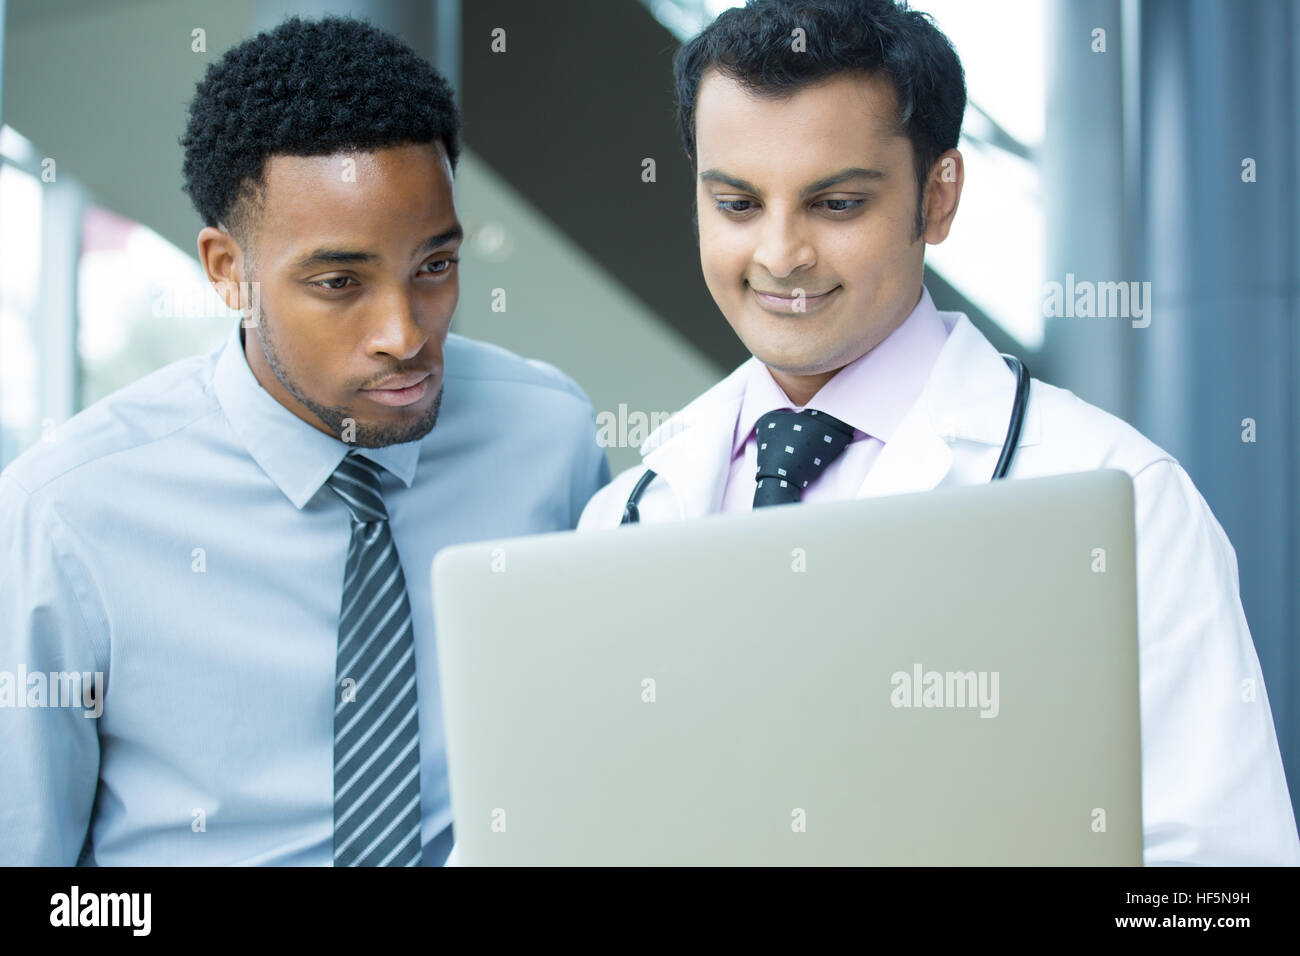 Closeup portrait du professionnel de santé intellectuelle avec blanc labcoat, dossier du patient, à discuter les résultats avec le patient, à l'aide de digita Banque D'Images